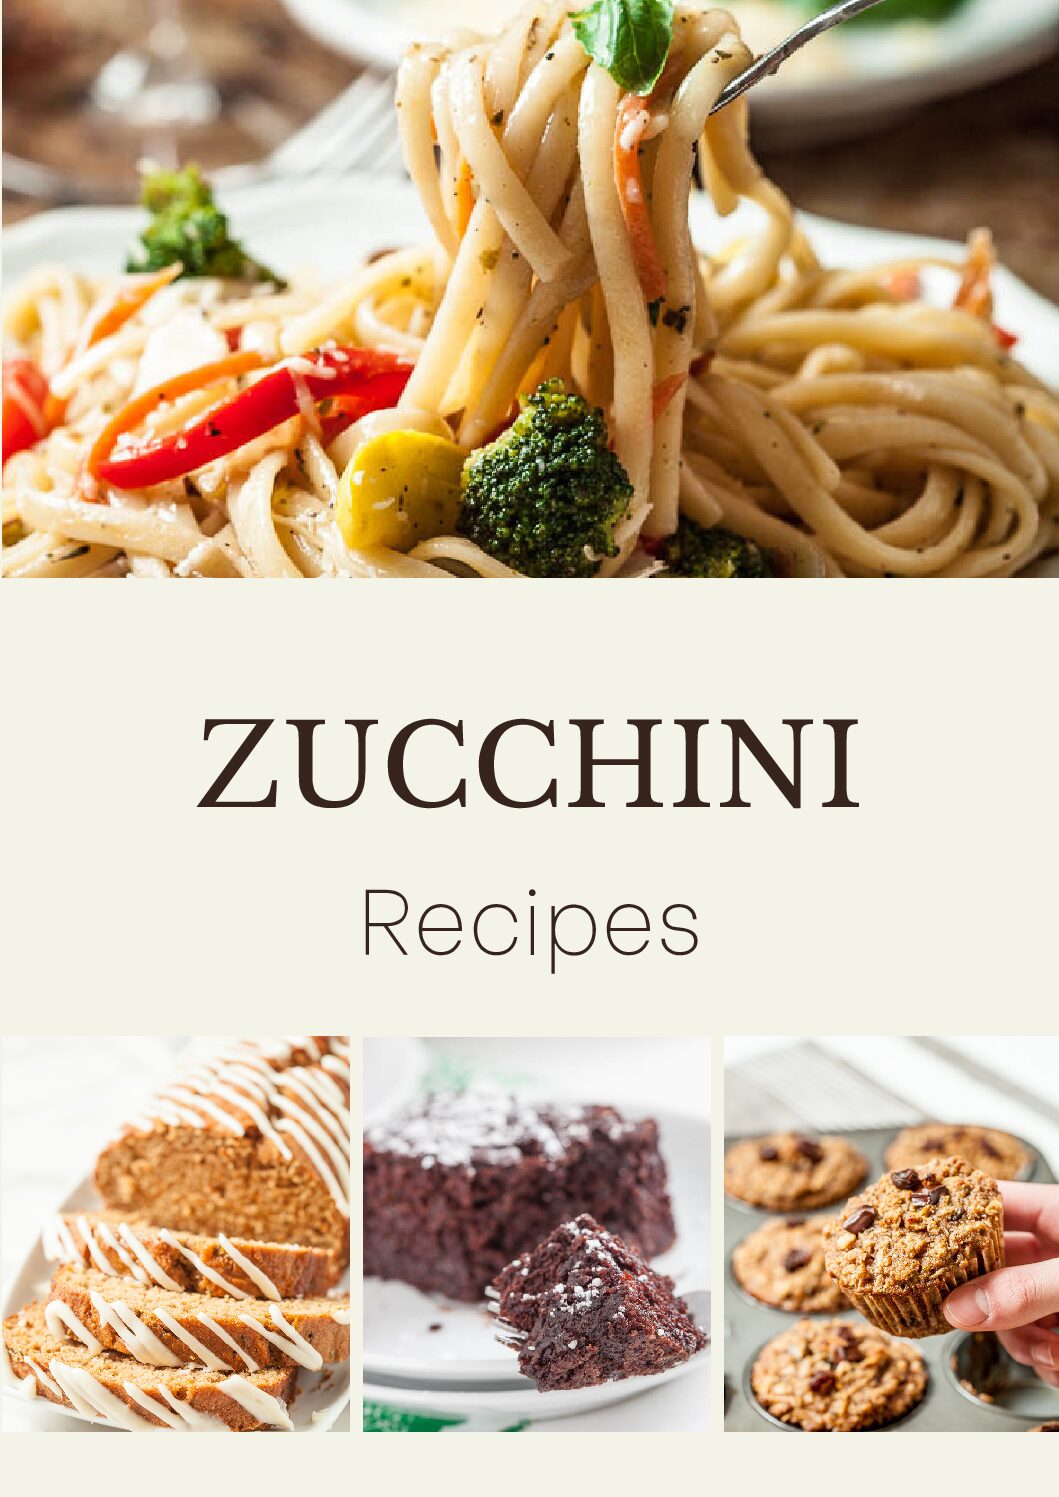 zucchini recipes collection